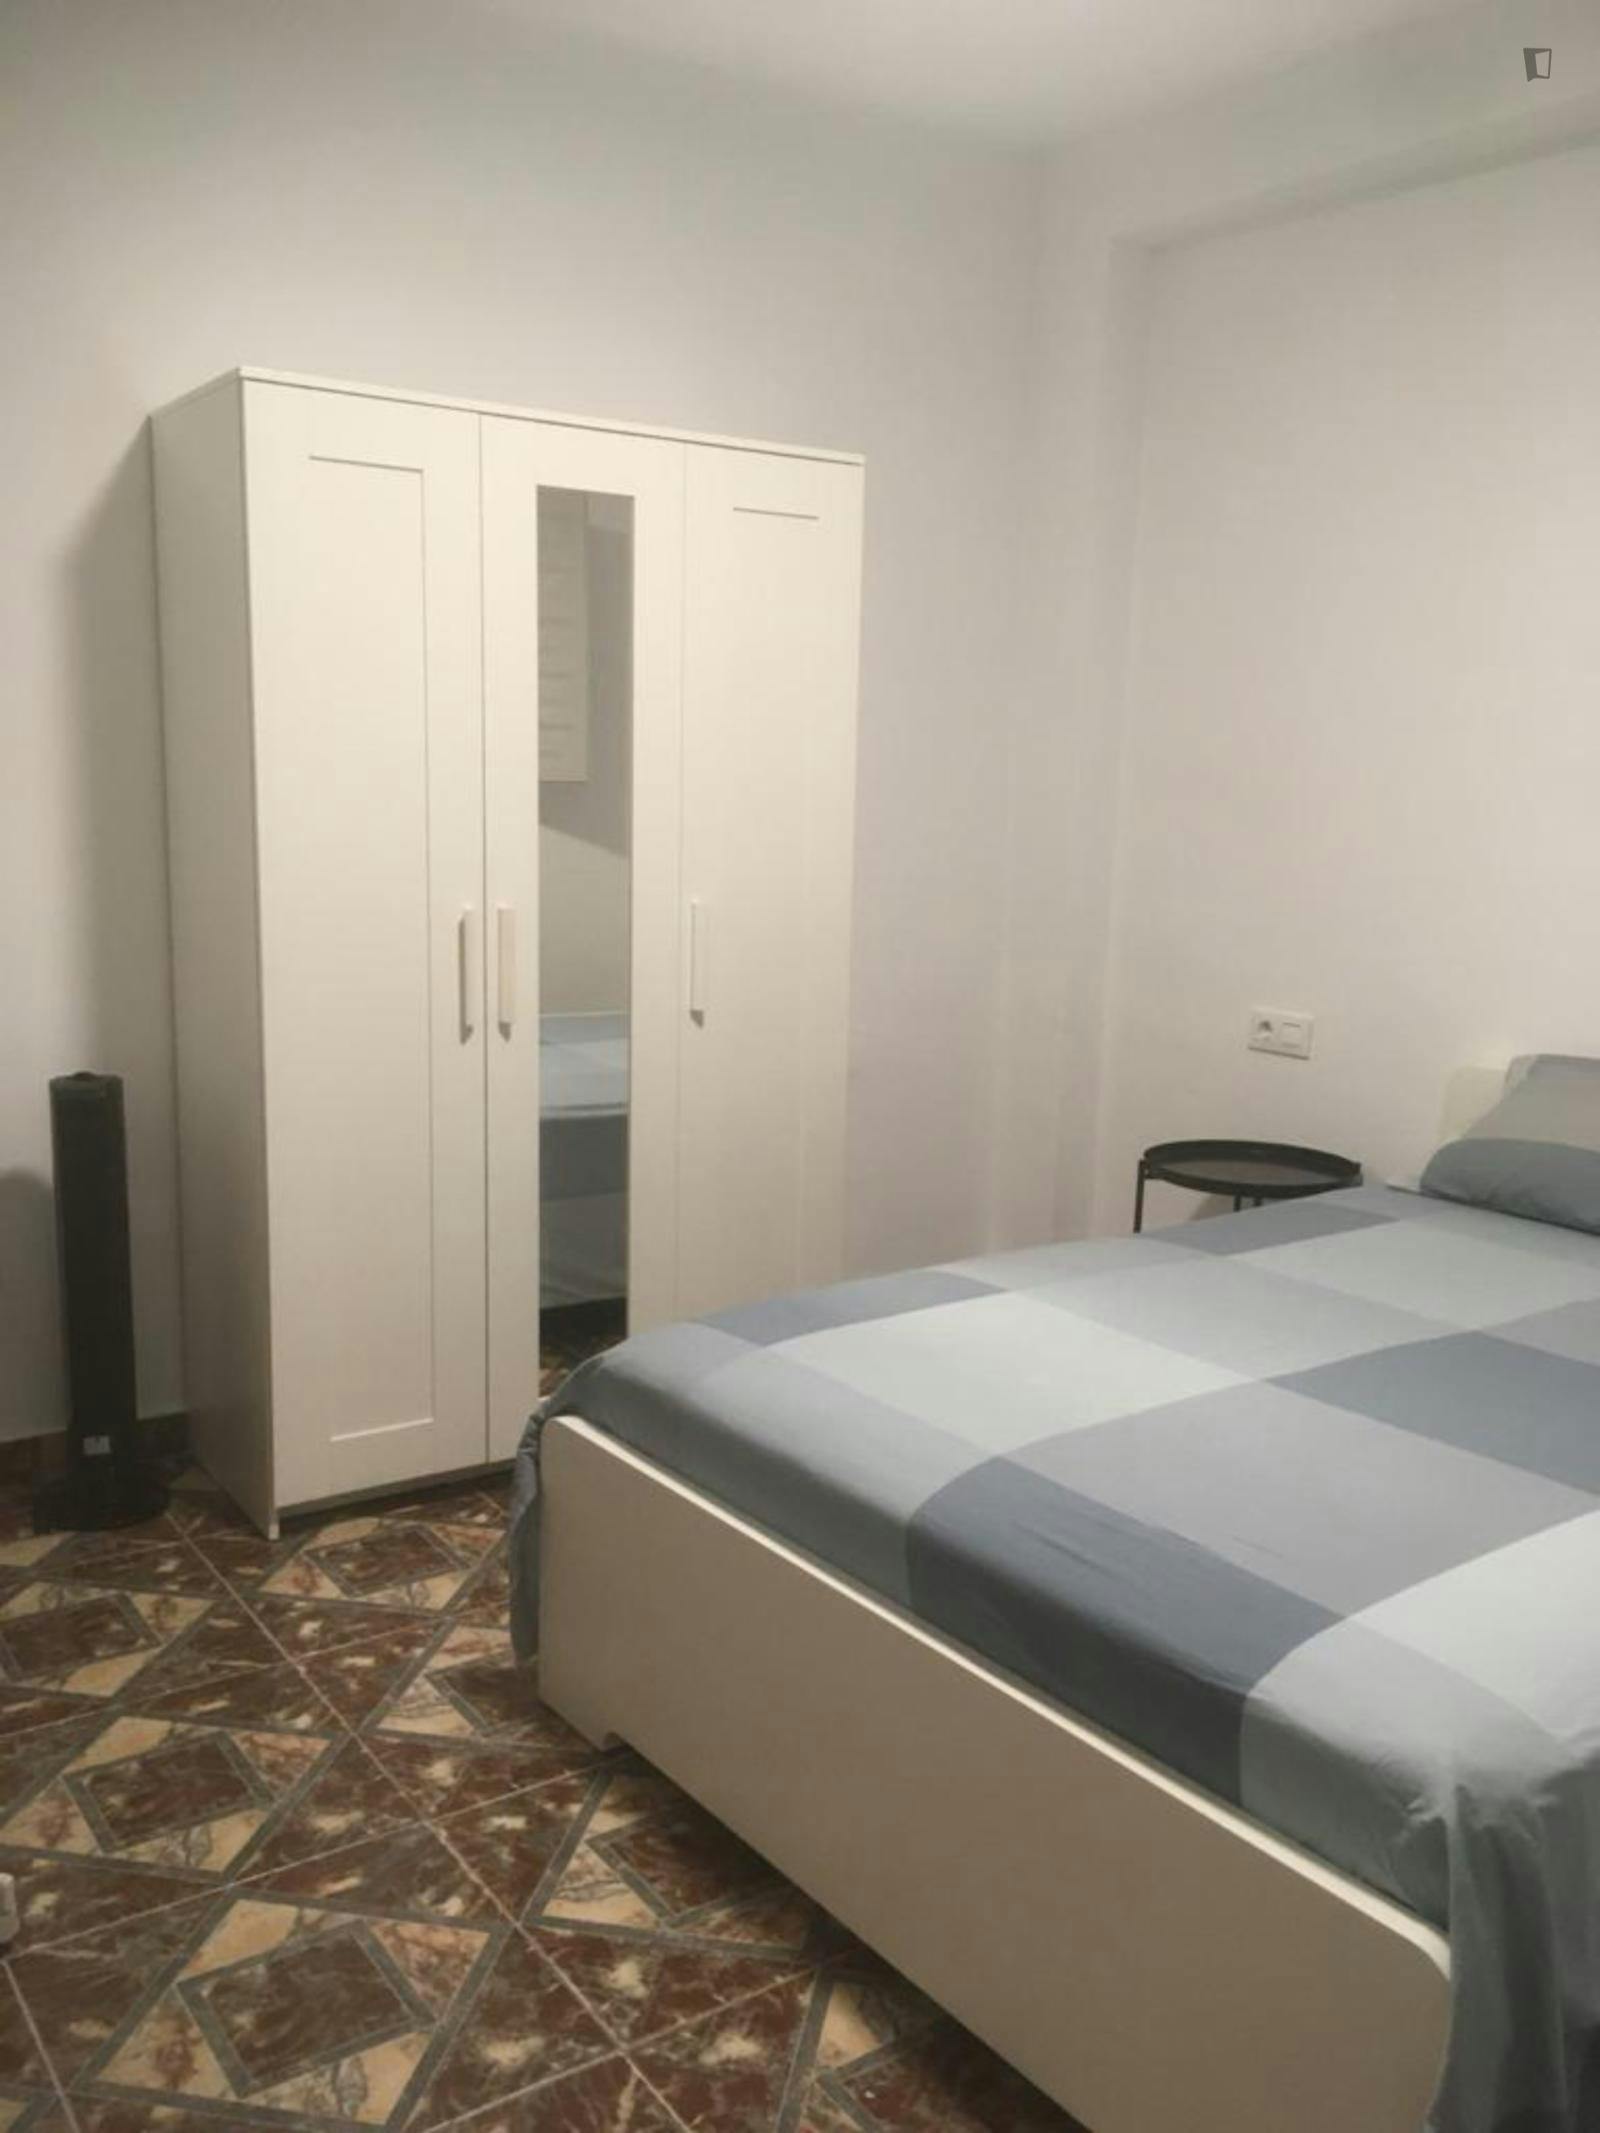 Stunning double bedroom in a 4-bedroom flat close to Puerta de Purchena